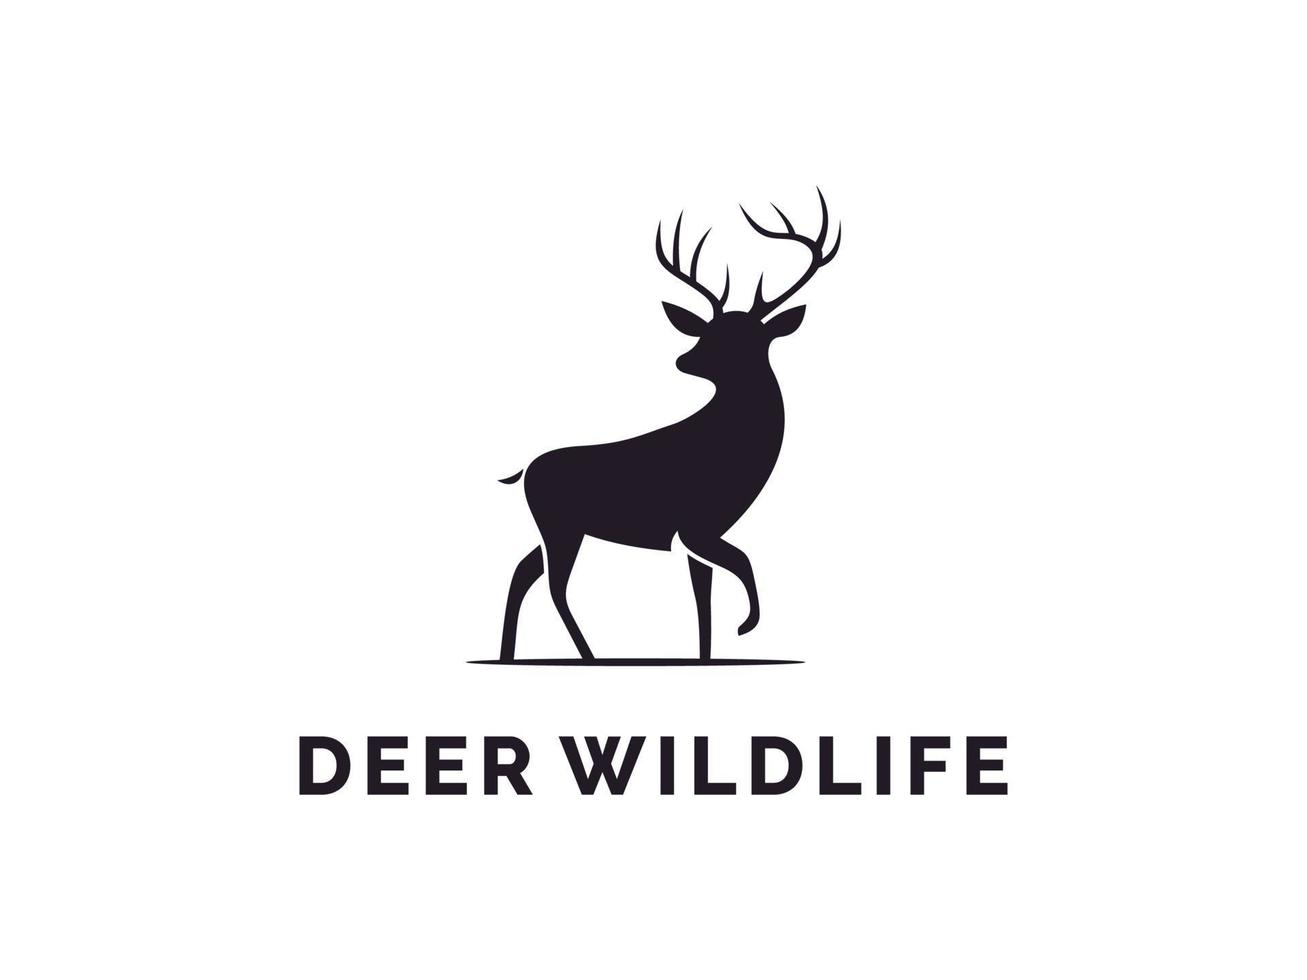 diseño elegante del logotipo de la silueta del ciervo del dólar de los ciervos de la belleza. utilizable para logotipos comerciales y de marca. elemento de plantilla de diseño de logotipo de vector plano.